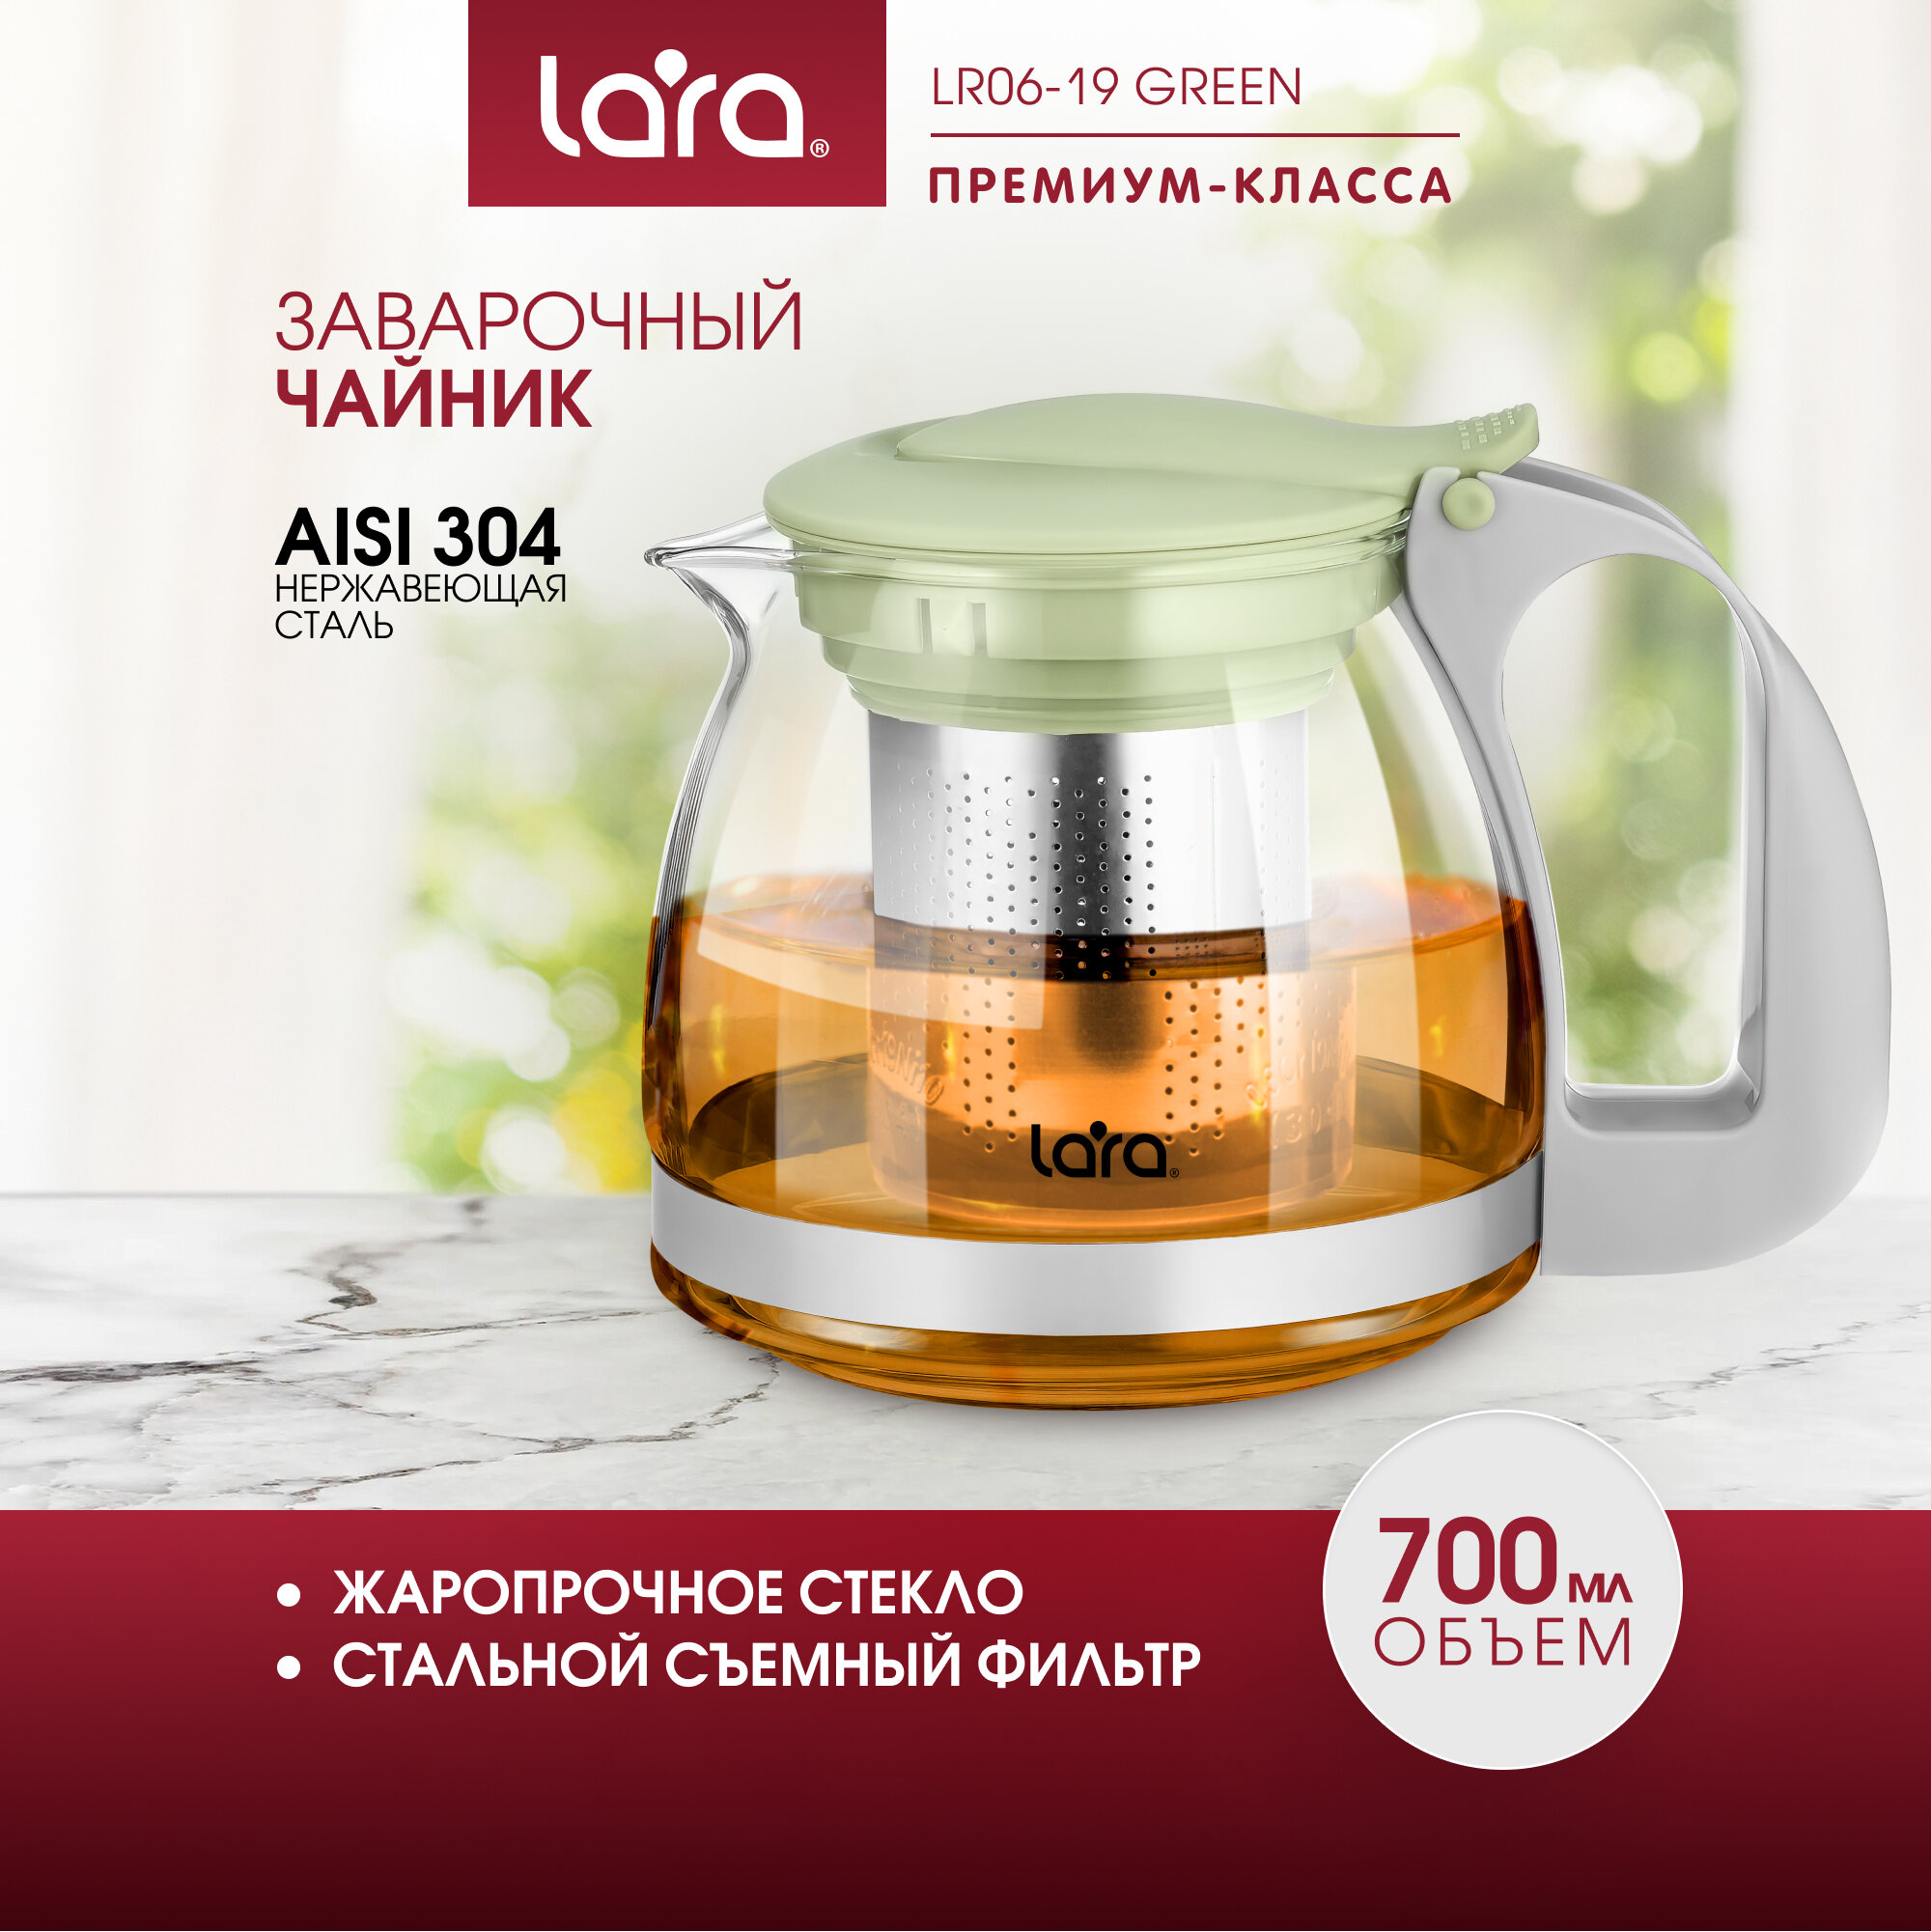 Чайник заварочный стеклянный LARA LR06-19 Green/ 0.7 л/ стальной фильтр/ подъем крышки